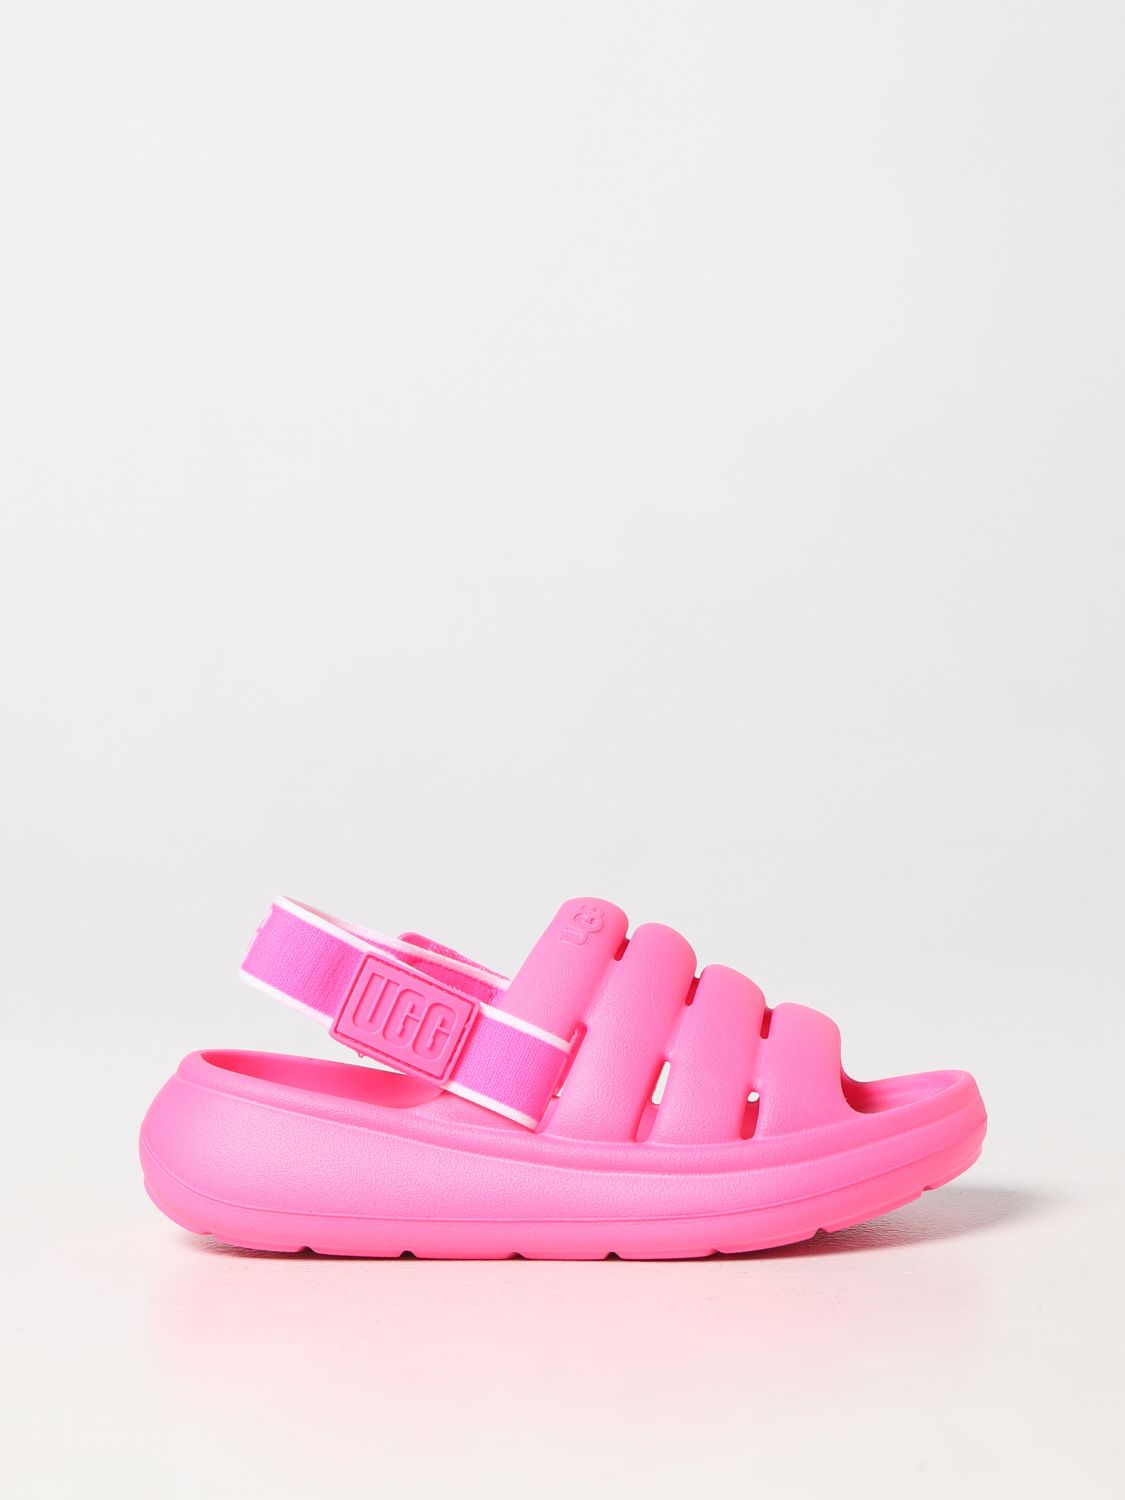 Ugg Shoes  Kids Color Pink